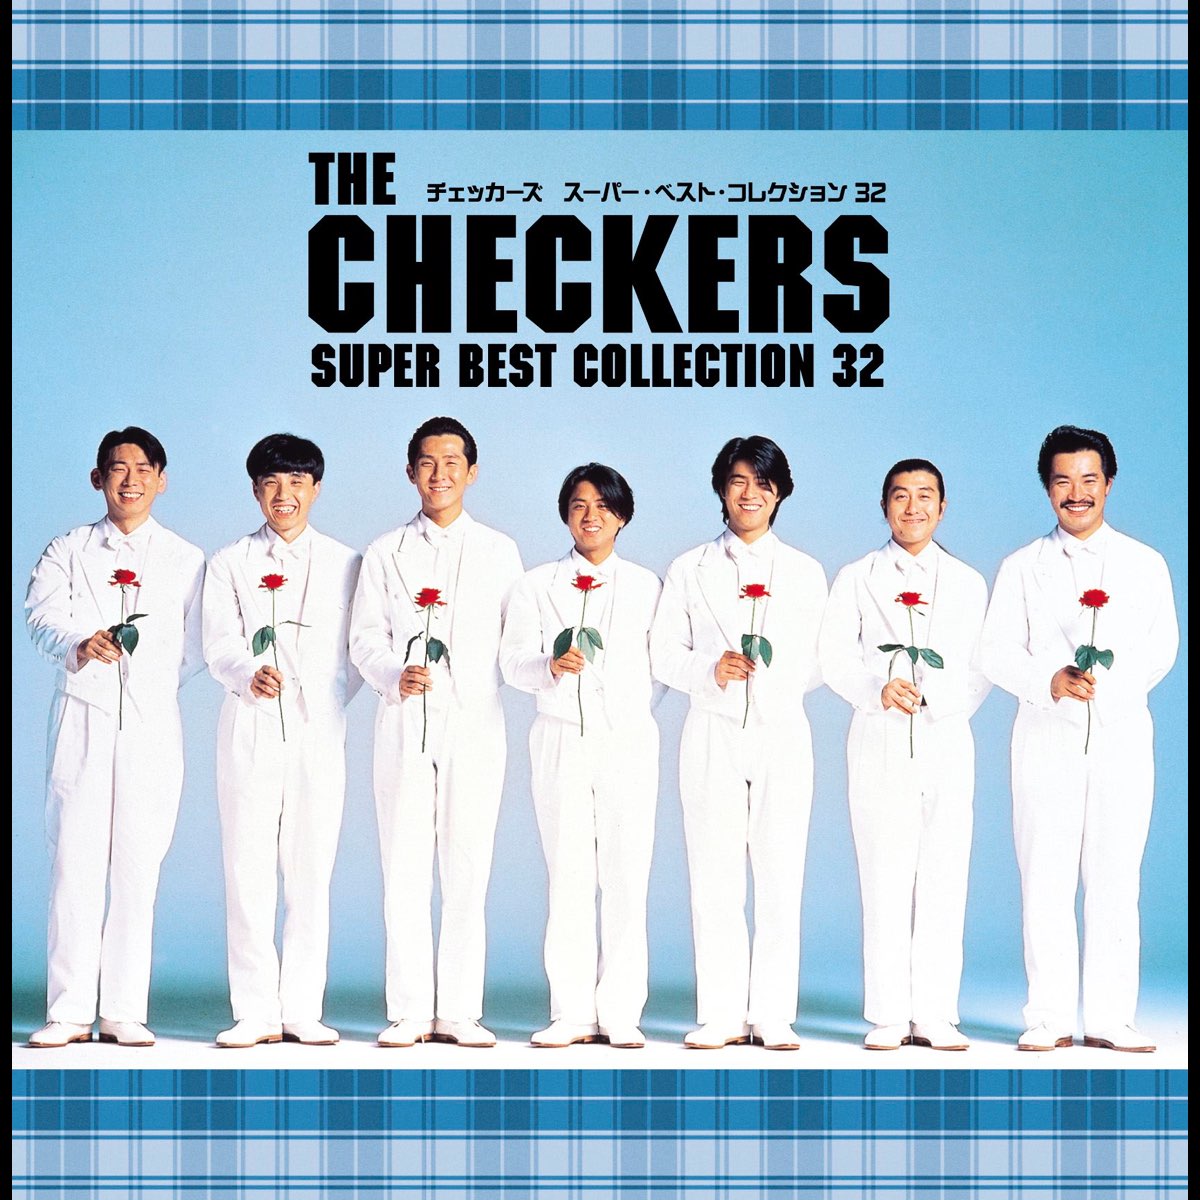 チェッカーズの「THE CHECKERS SUPER BEST COLLECTION 32」をApple Musicで